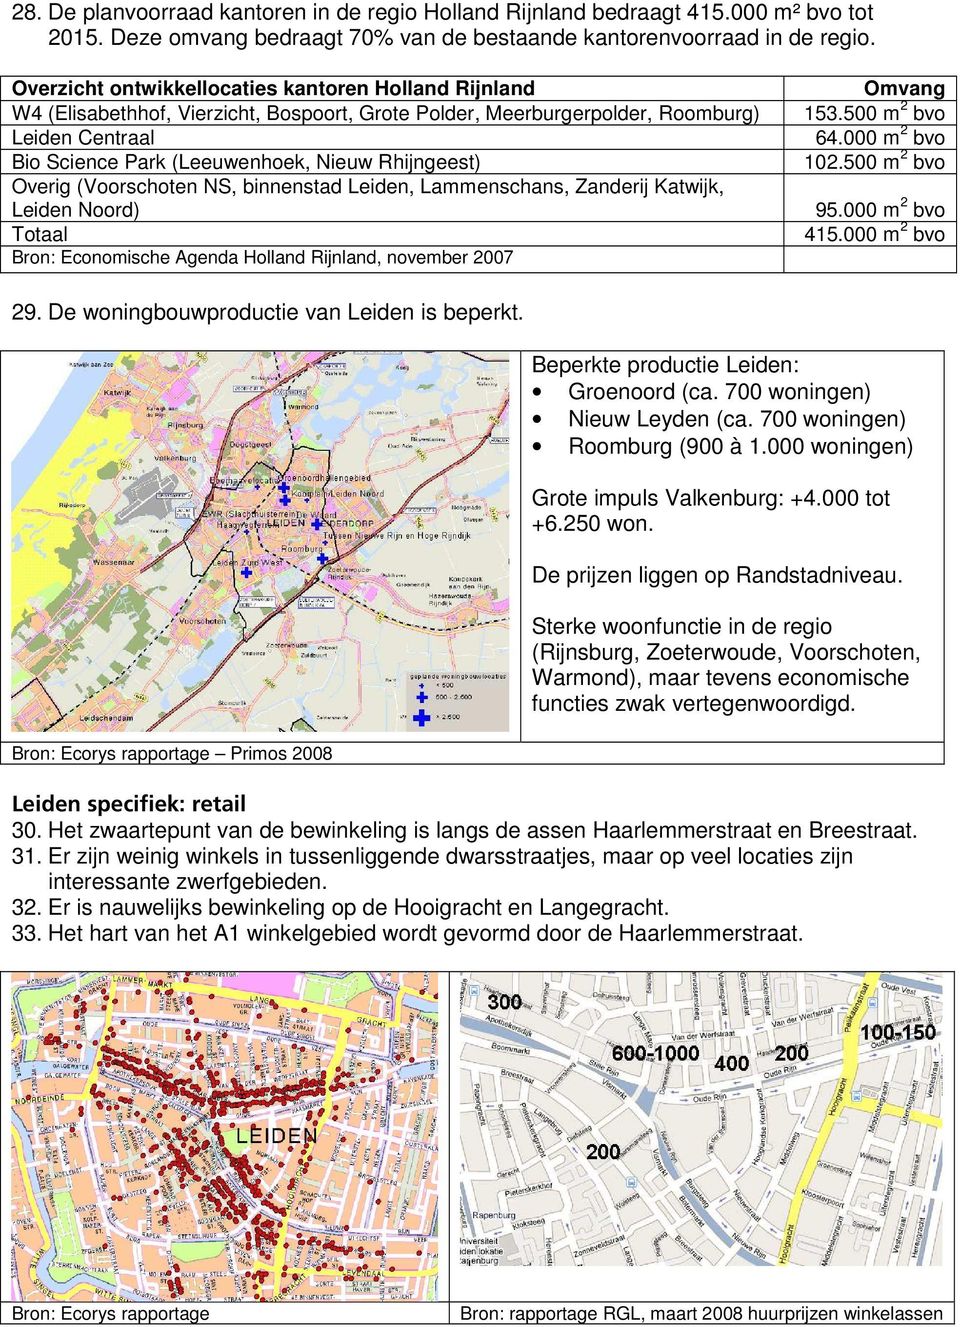 (Voorschoten NS, binnenstad, Lammenschans, Zanderij Katwijk, Noord) Totaal Bron: Economische Agenda Holland Rijnland, november 2007 Omvang 153.500 m 2 bvo 64.000 m 2 bvo 102.500 m 2 bvo 95.